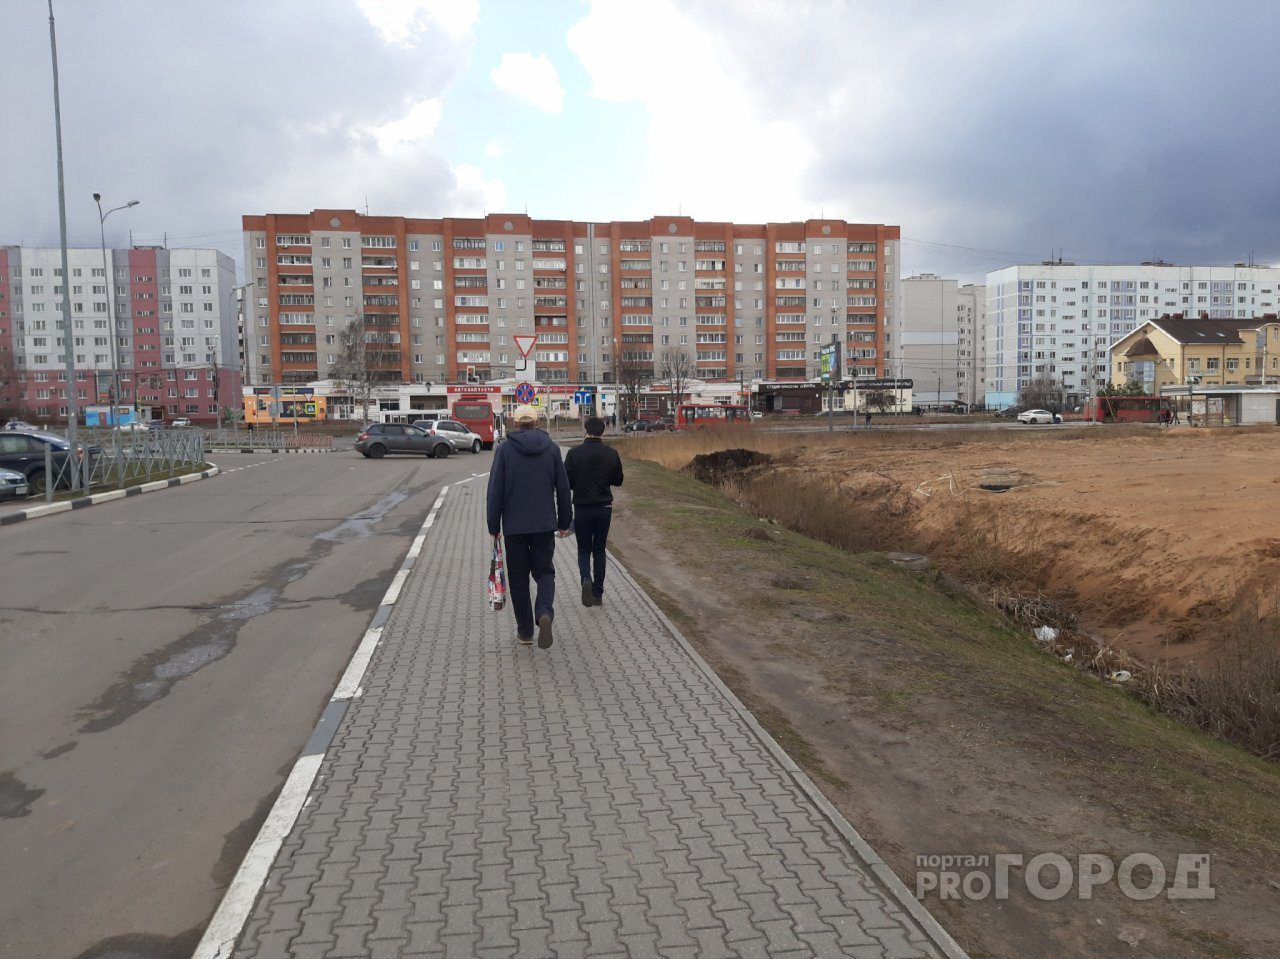 "Температурная пила": синоптики поразили прогнозом погоды в Ярославле